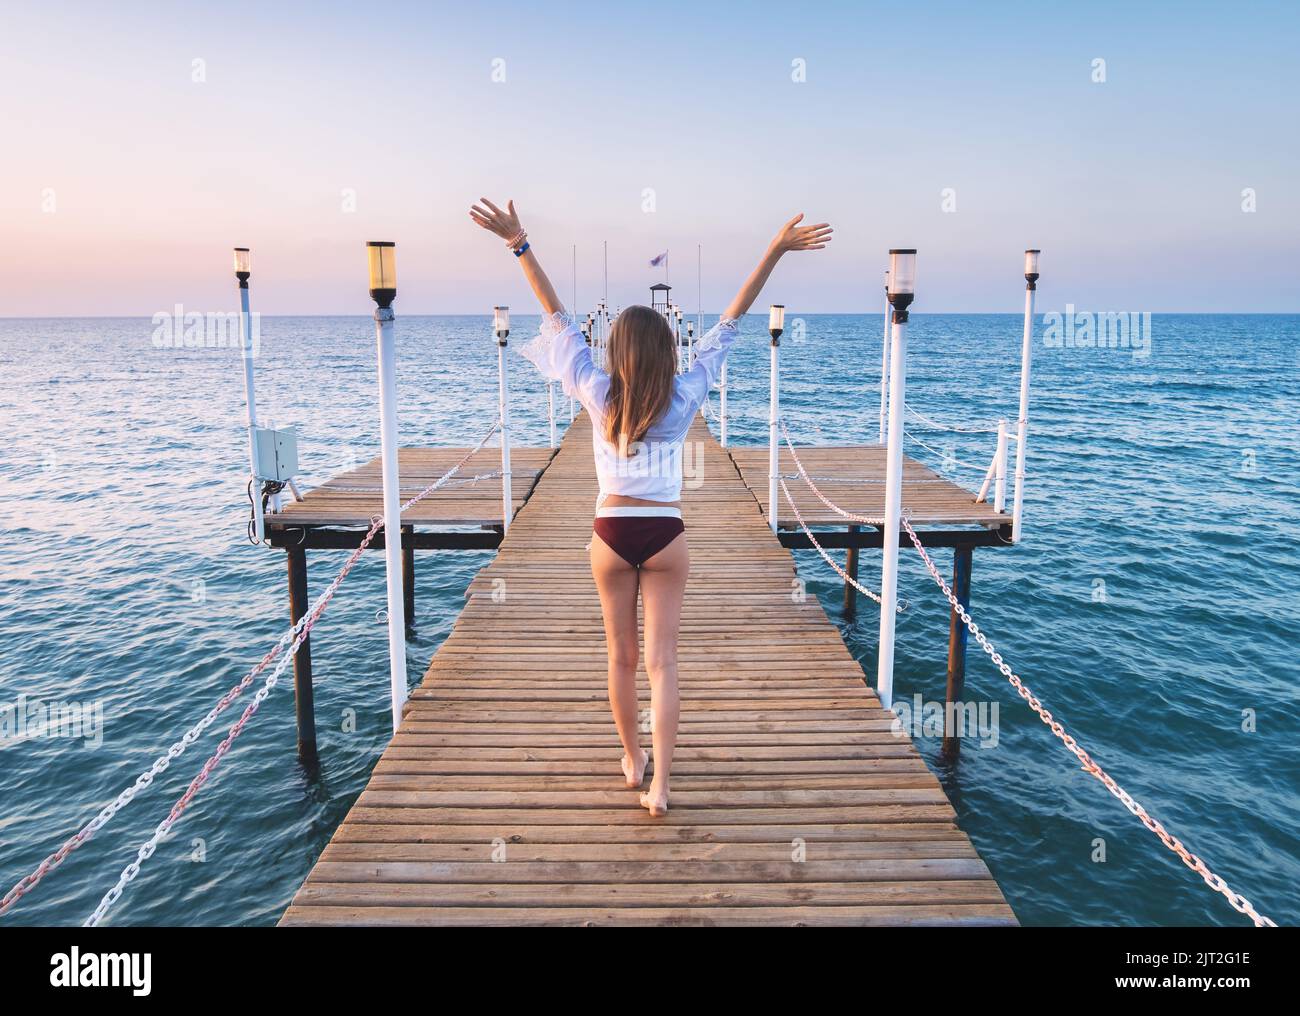 Glückliche junge Frau im Bikini mit erhobenen Armen auf dem Pier zu Fuß Stockfoto